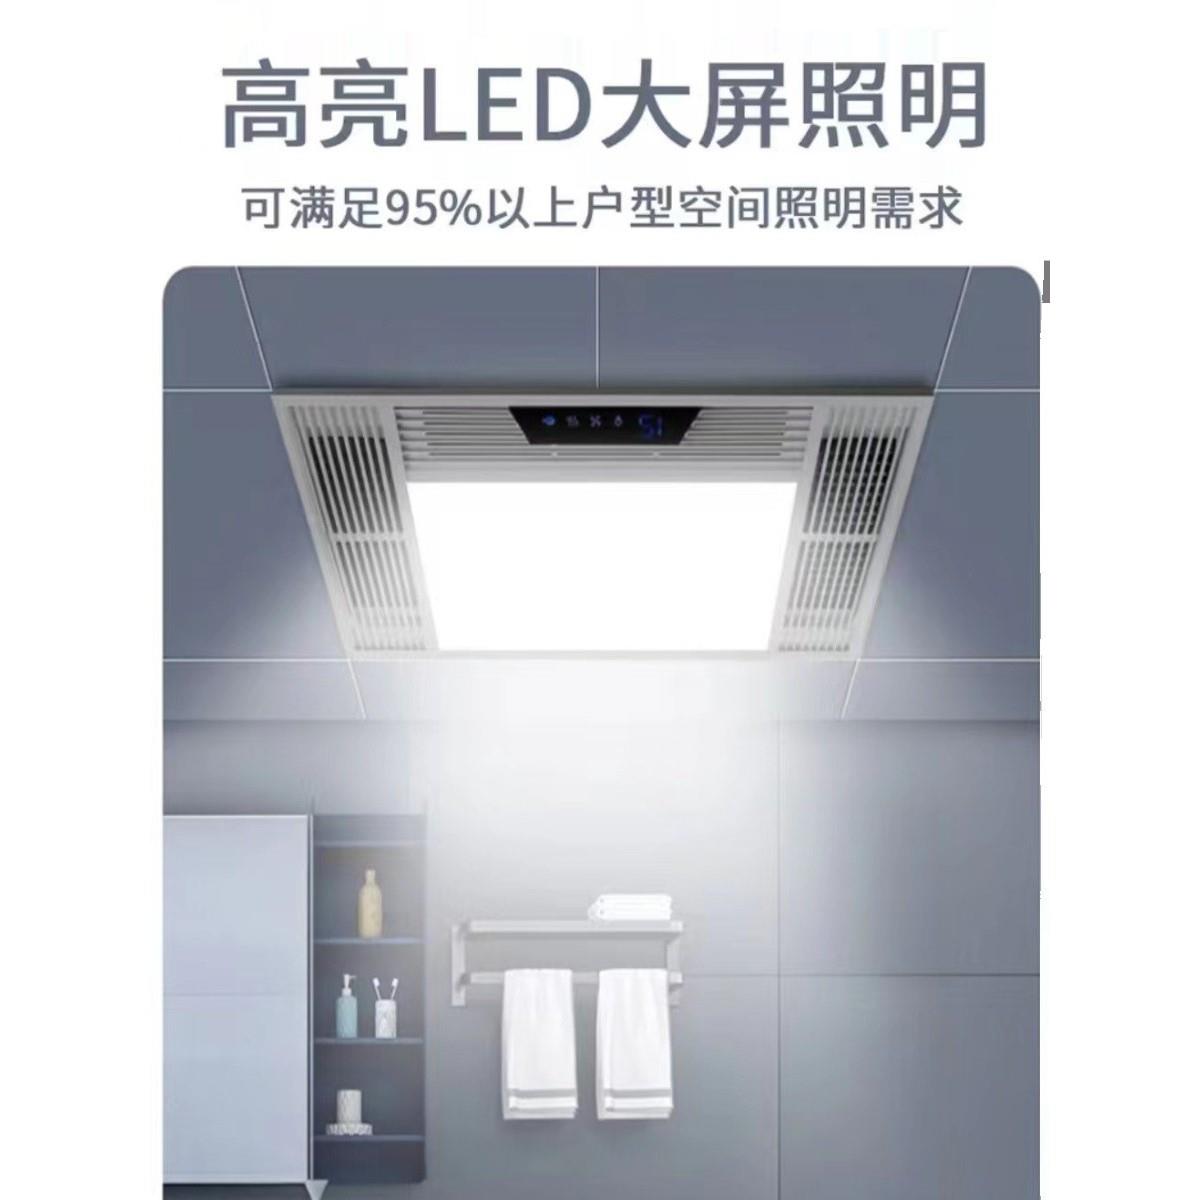 小米官方官网适用风暖浴霸集成吊顶五合一浴室卫生间排气扇照明一